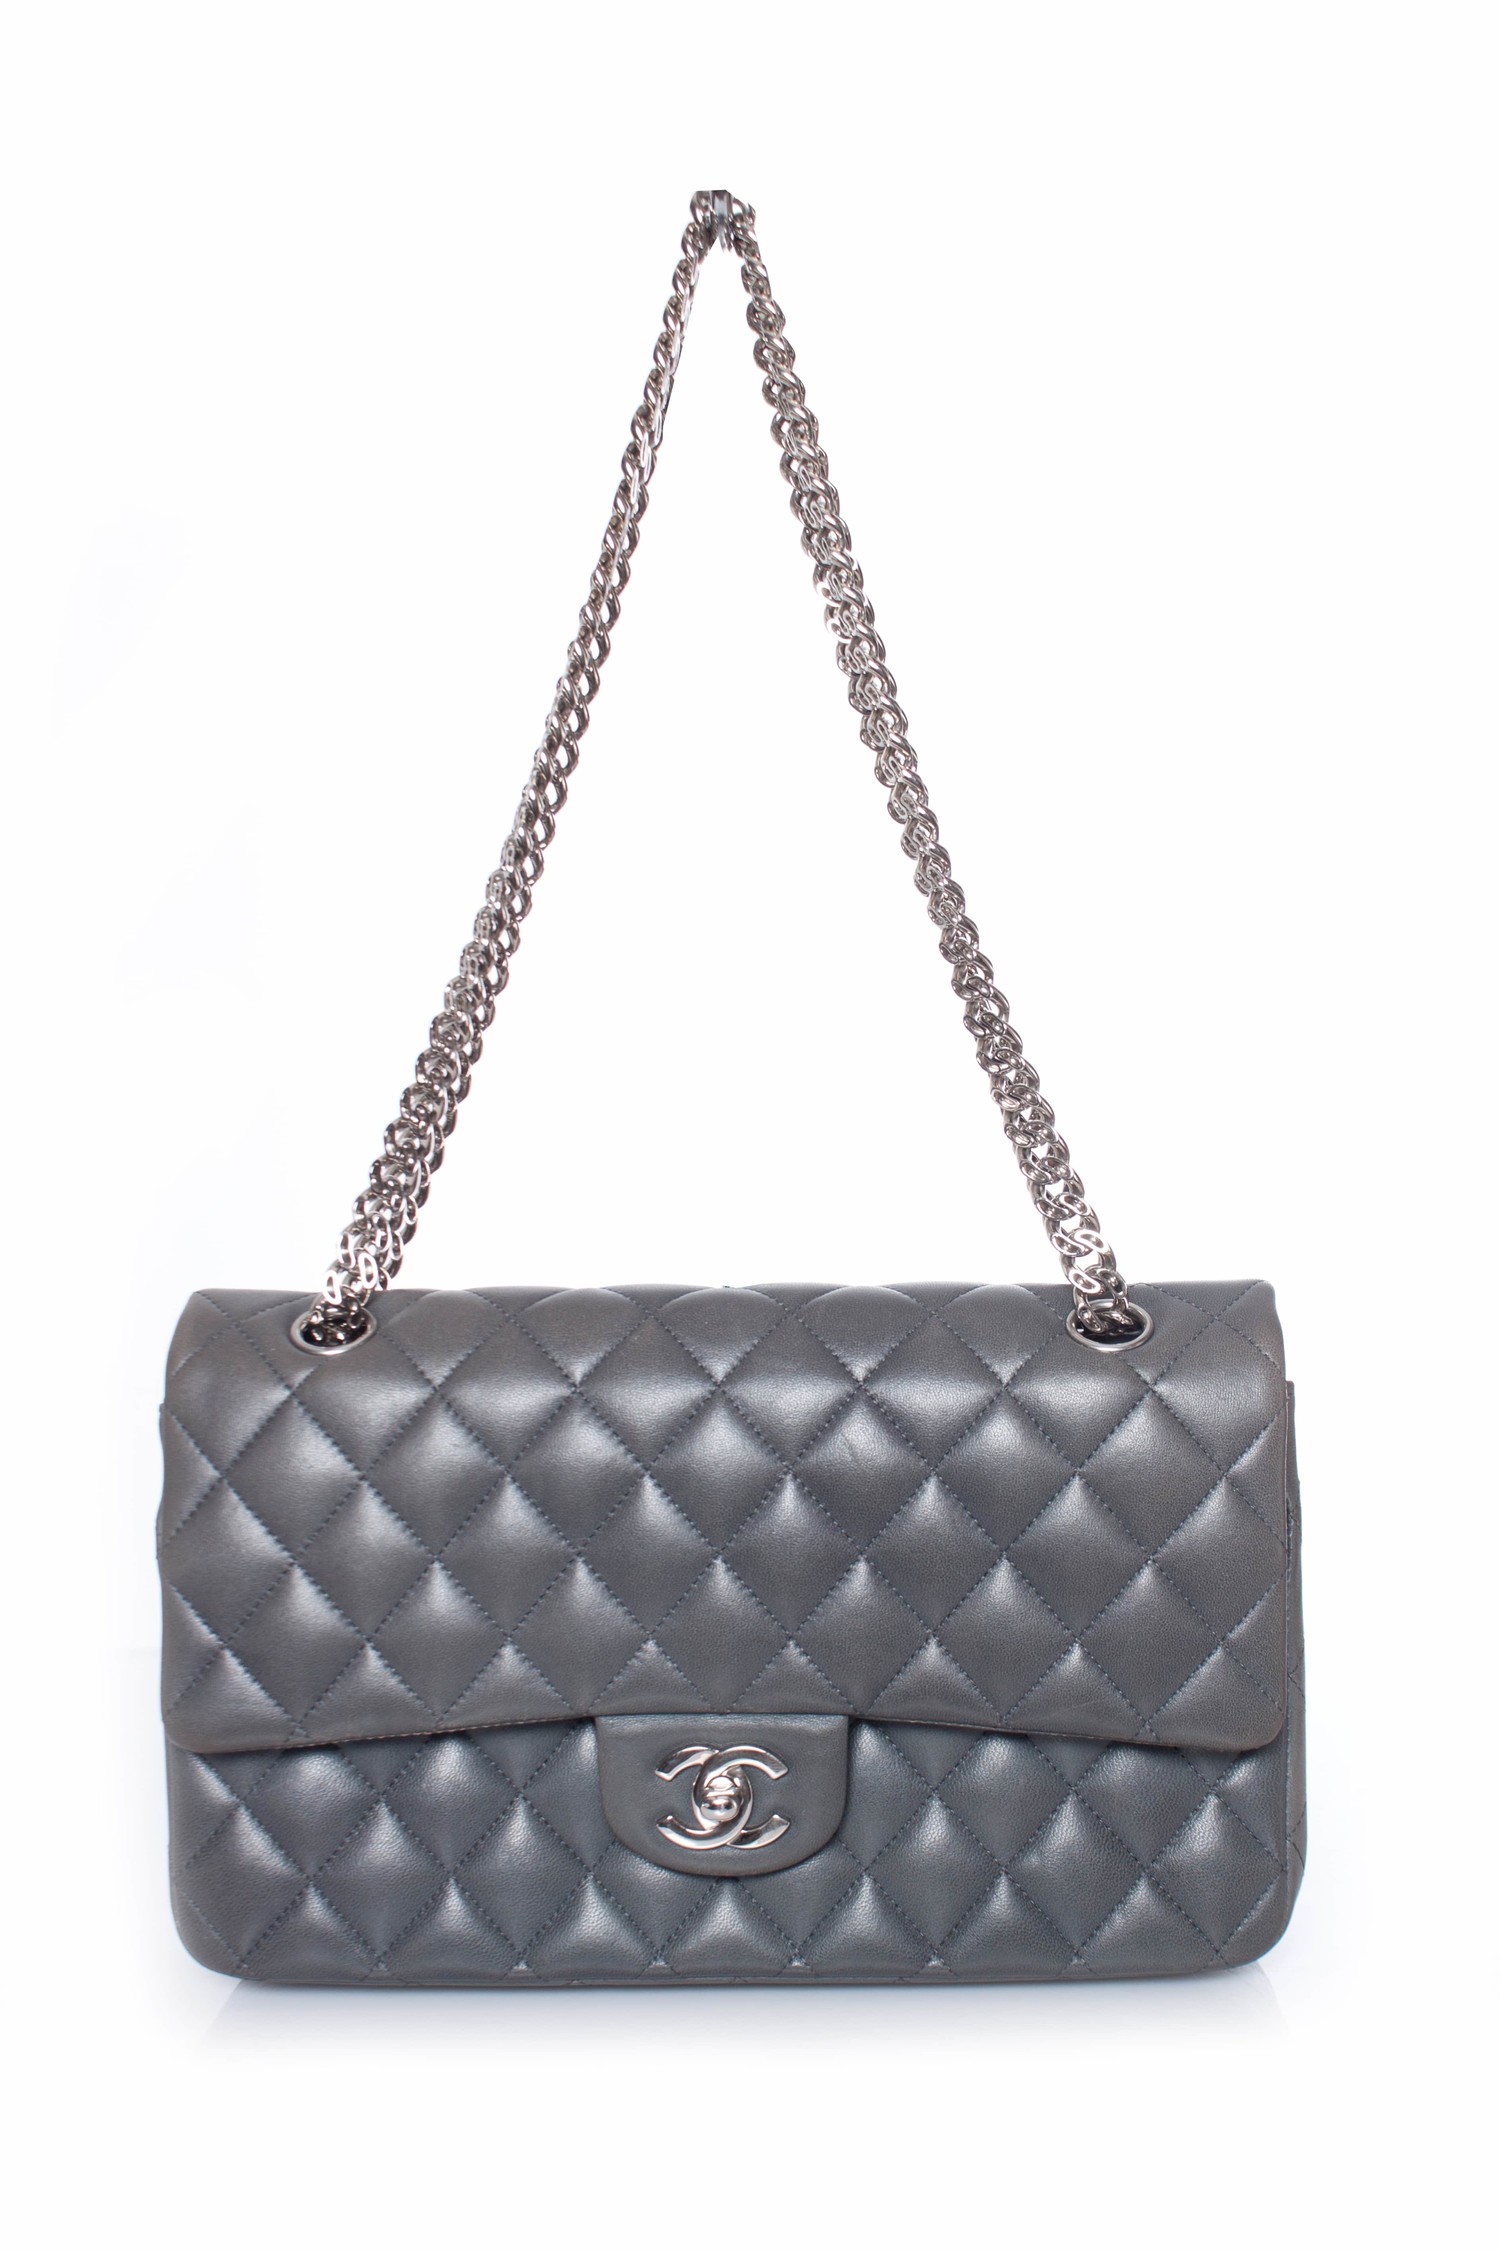 Chanel, medium classic flap bag. - Unique Designer Pieces